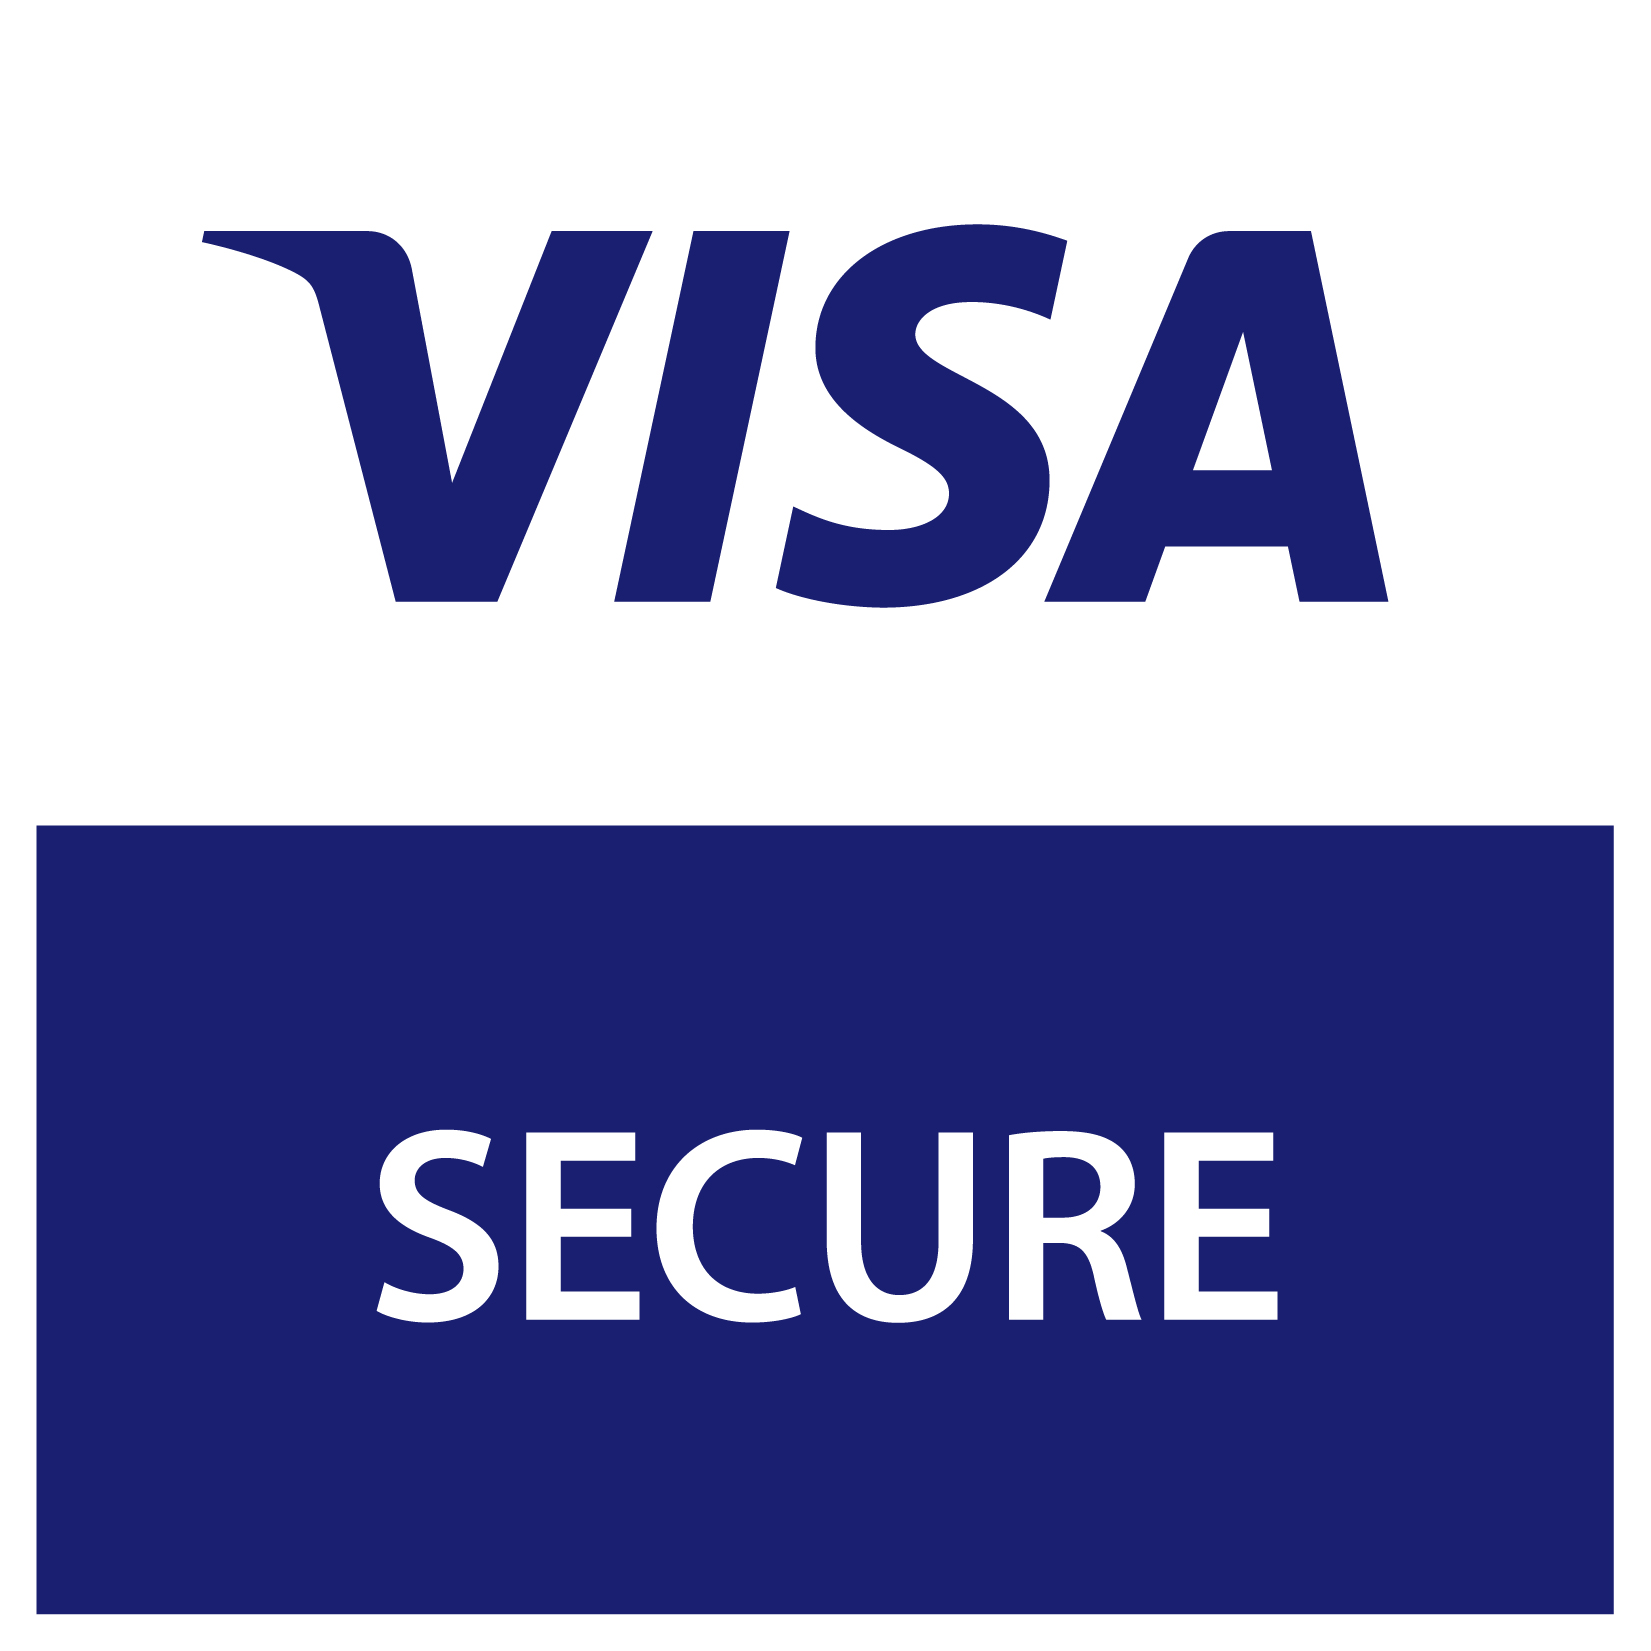 We accept Visa Secure